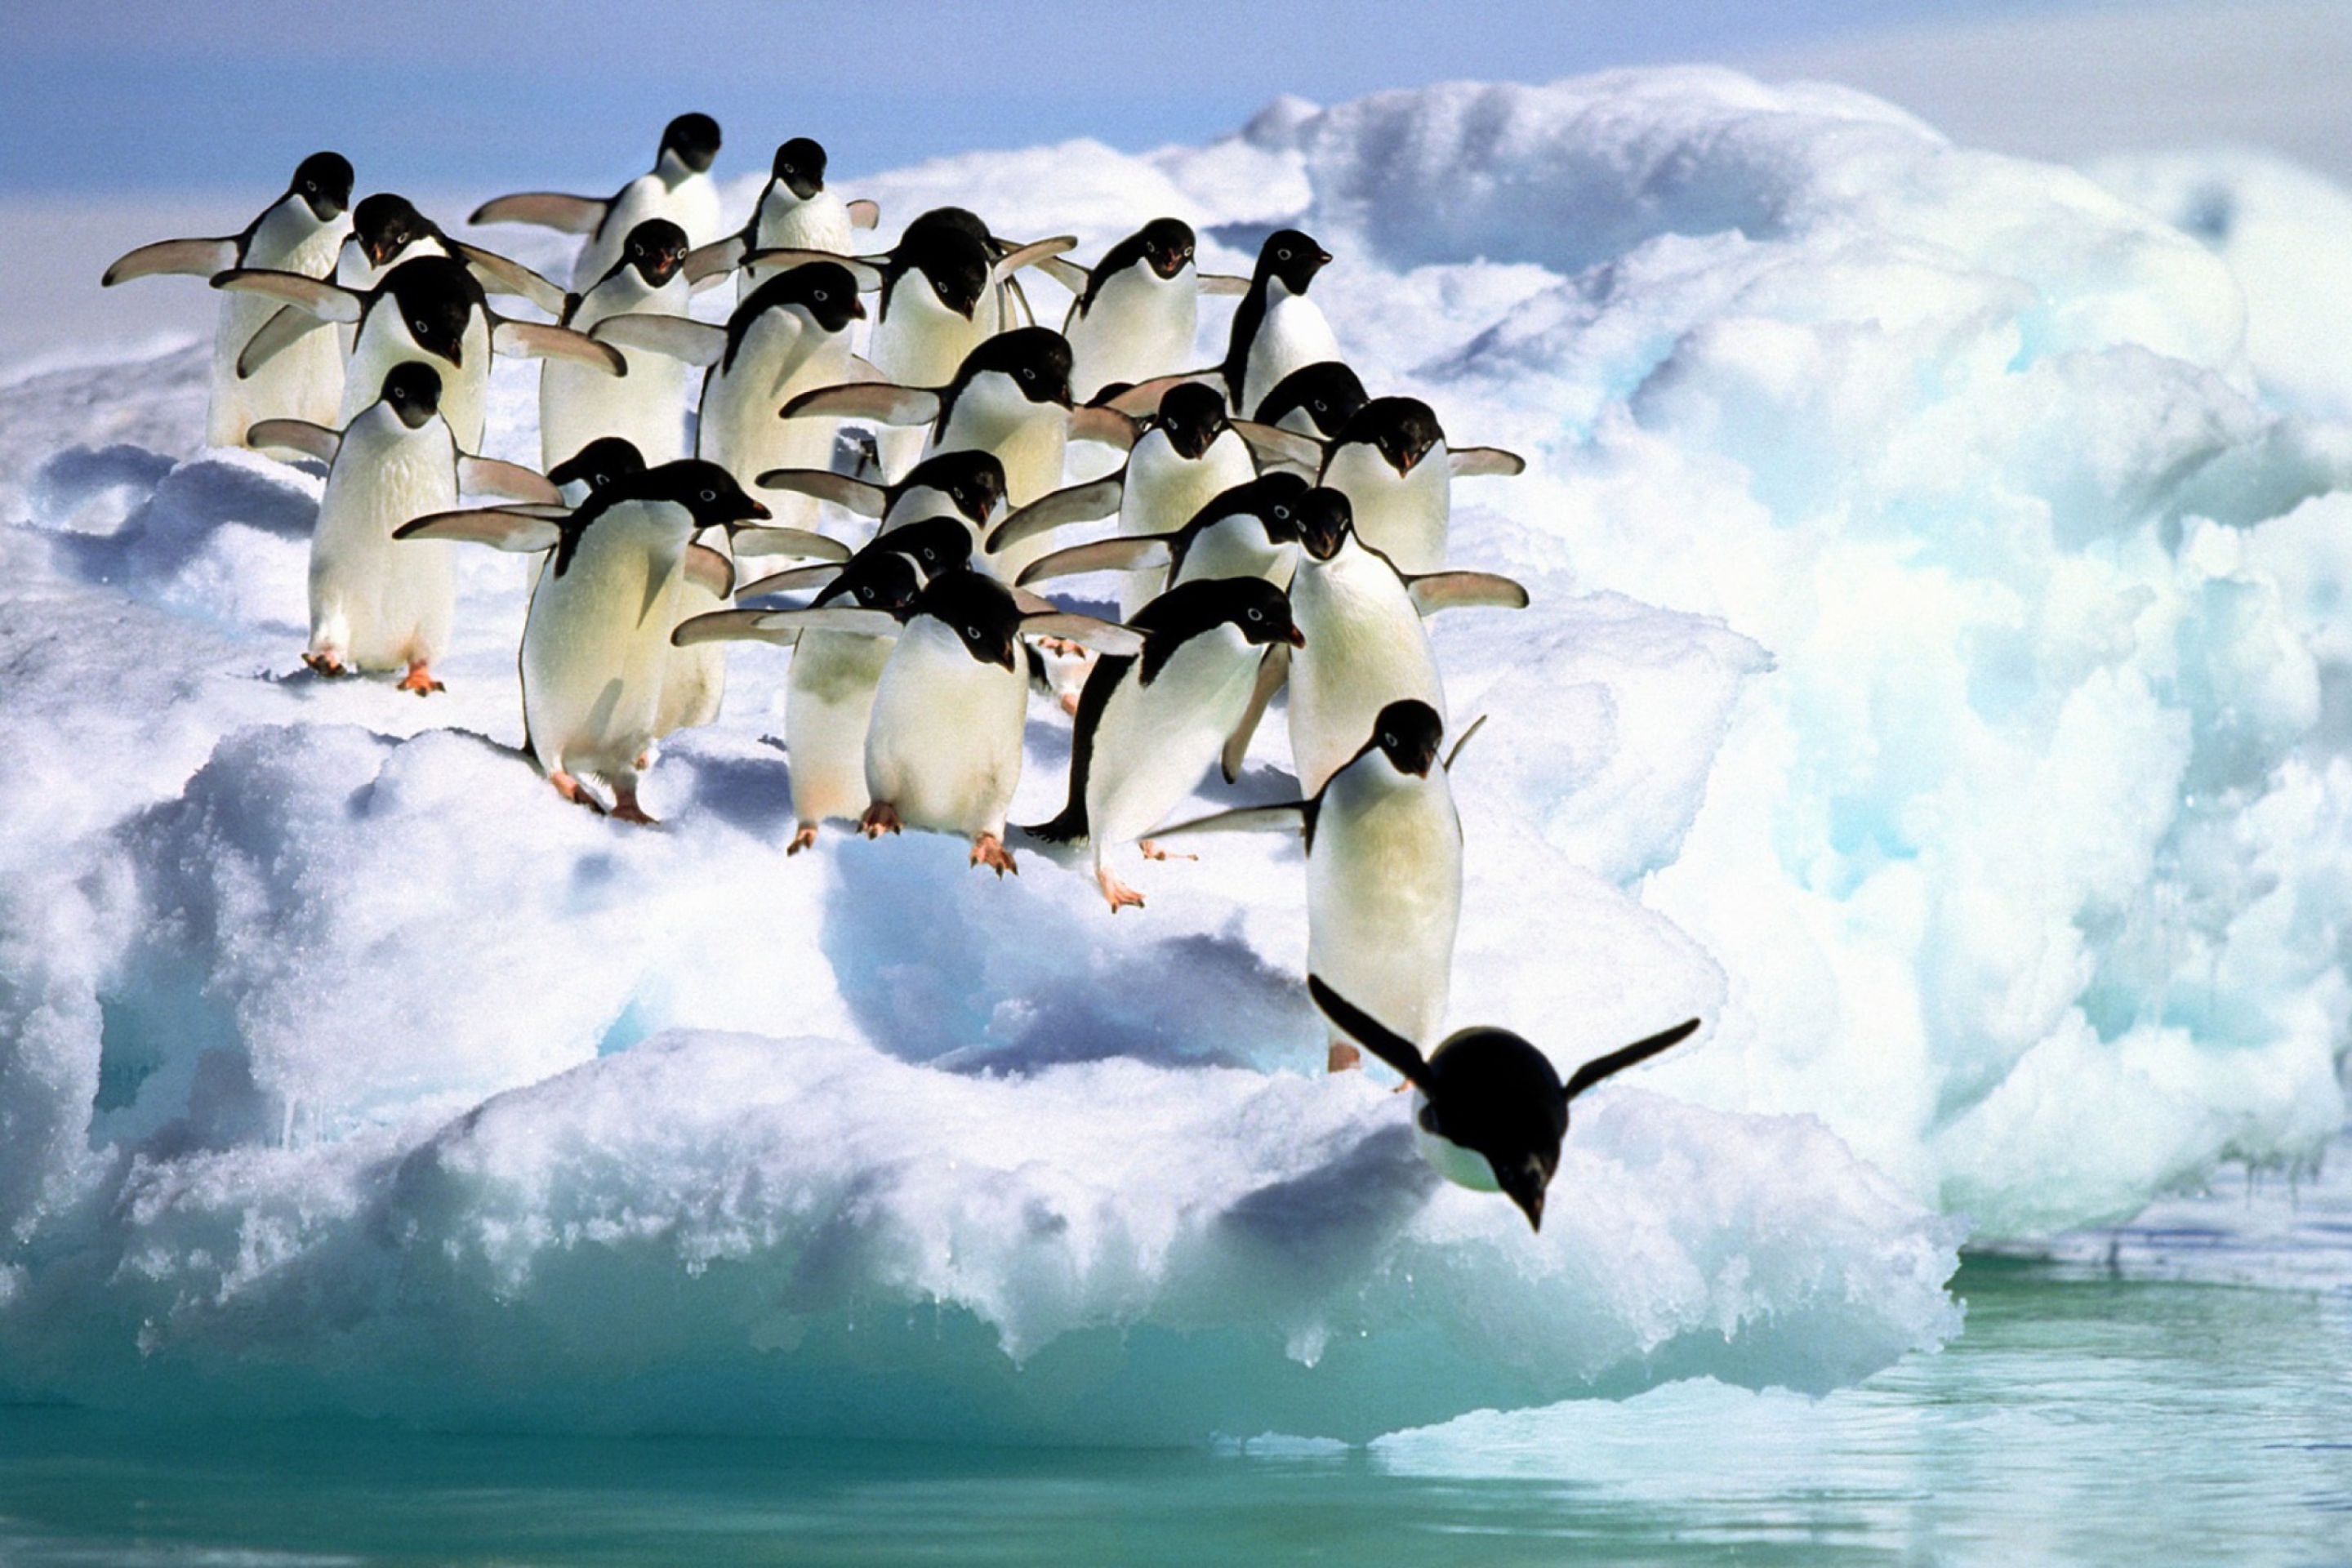 Penguins On An Iceberg wallpaper 2880x1920